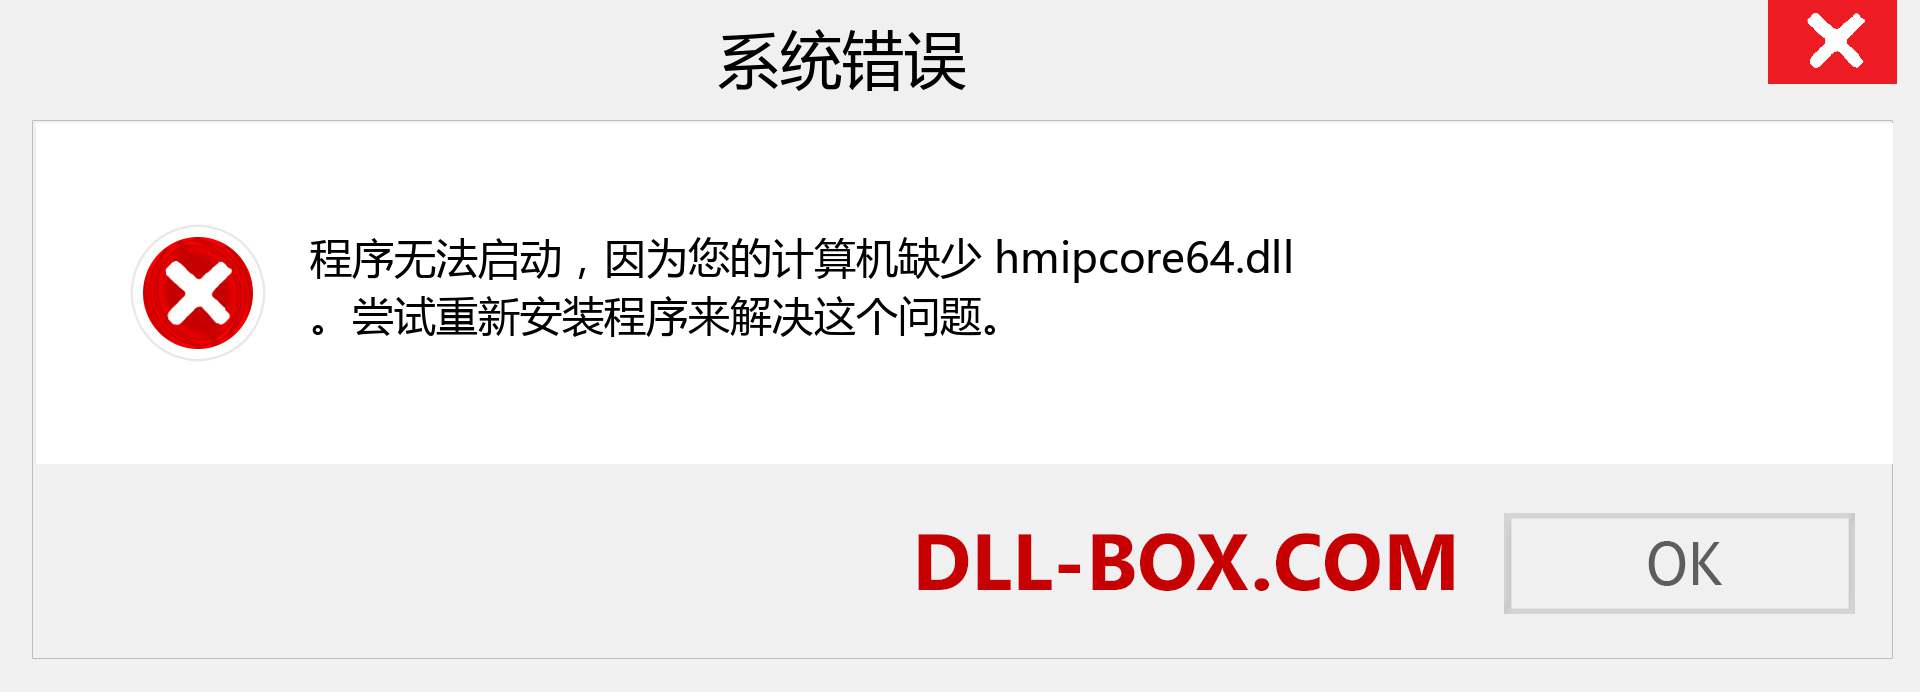 hmipcore64.dll 文件丢失？。 适用于 Windows 7、8、10 的下载 - 修复 Windows、照片、图像上的 hmipcore64 dll 丢失错误